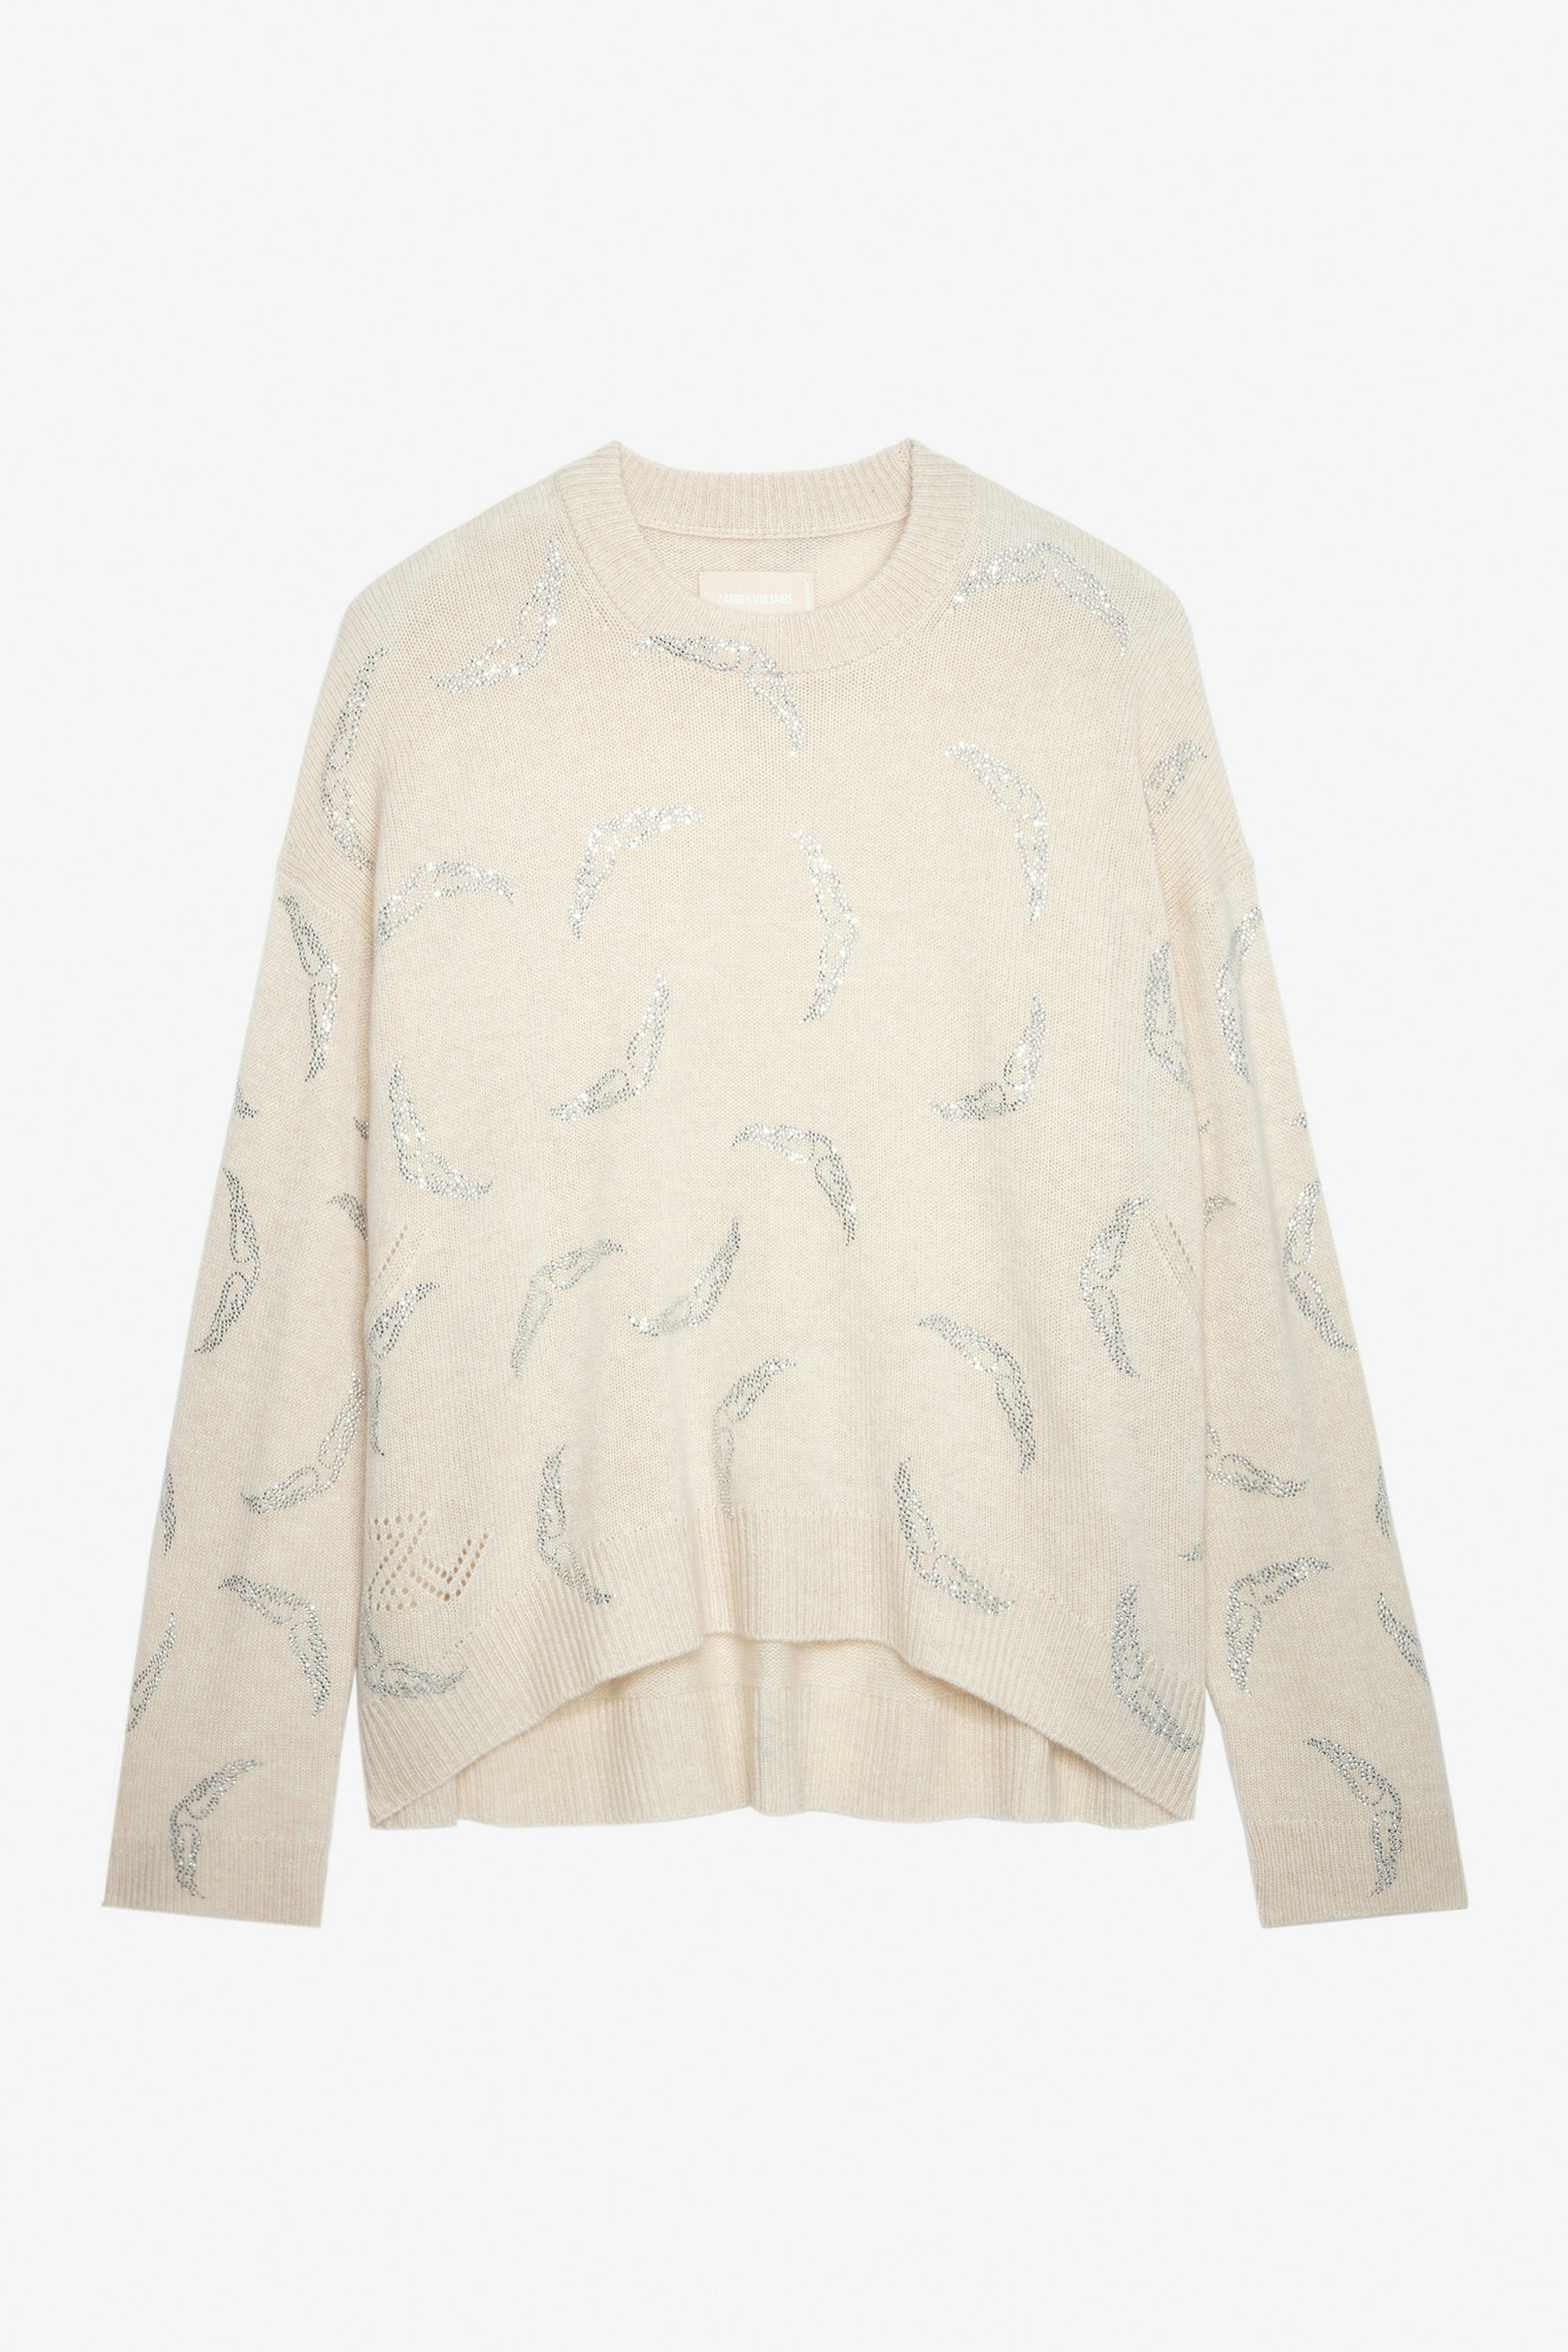 Markus Diamanté Cashmere Sweater  - Women’s off-white cashmere sweater with diamanté wing motifs.